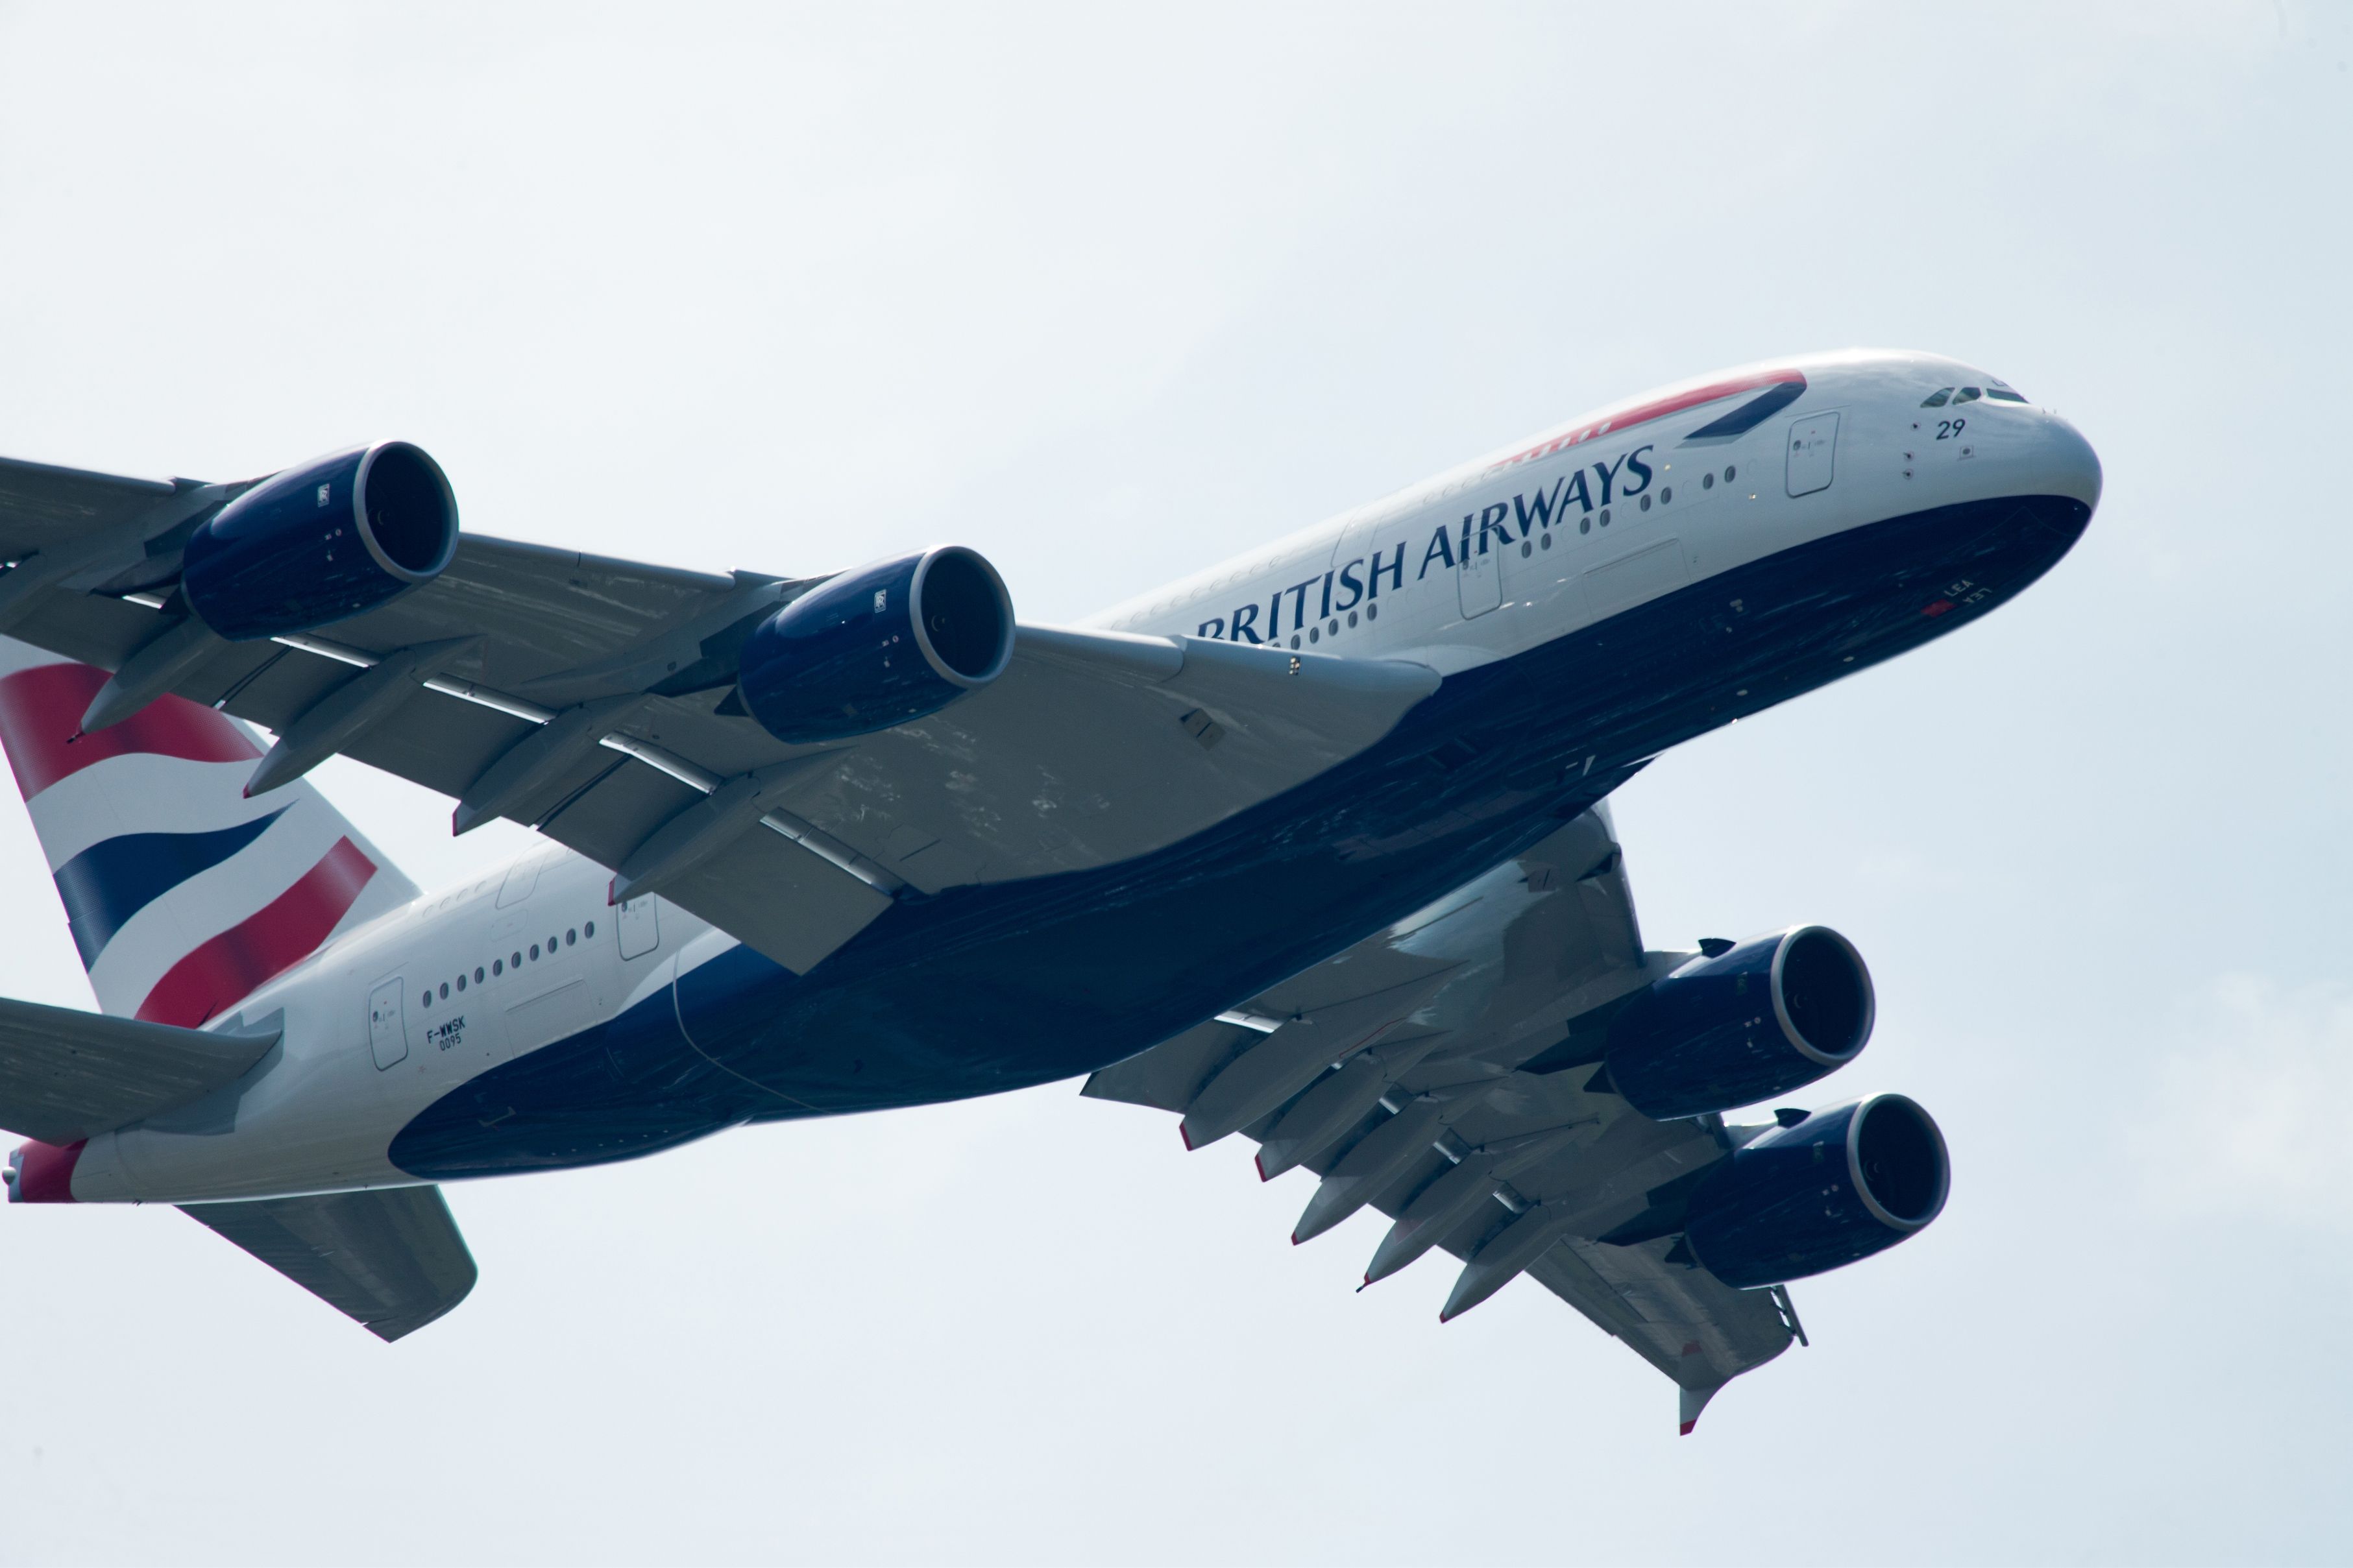 A380 British Airways in flight 